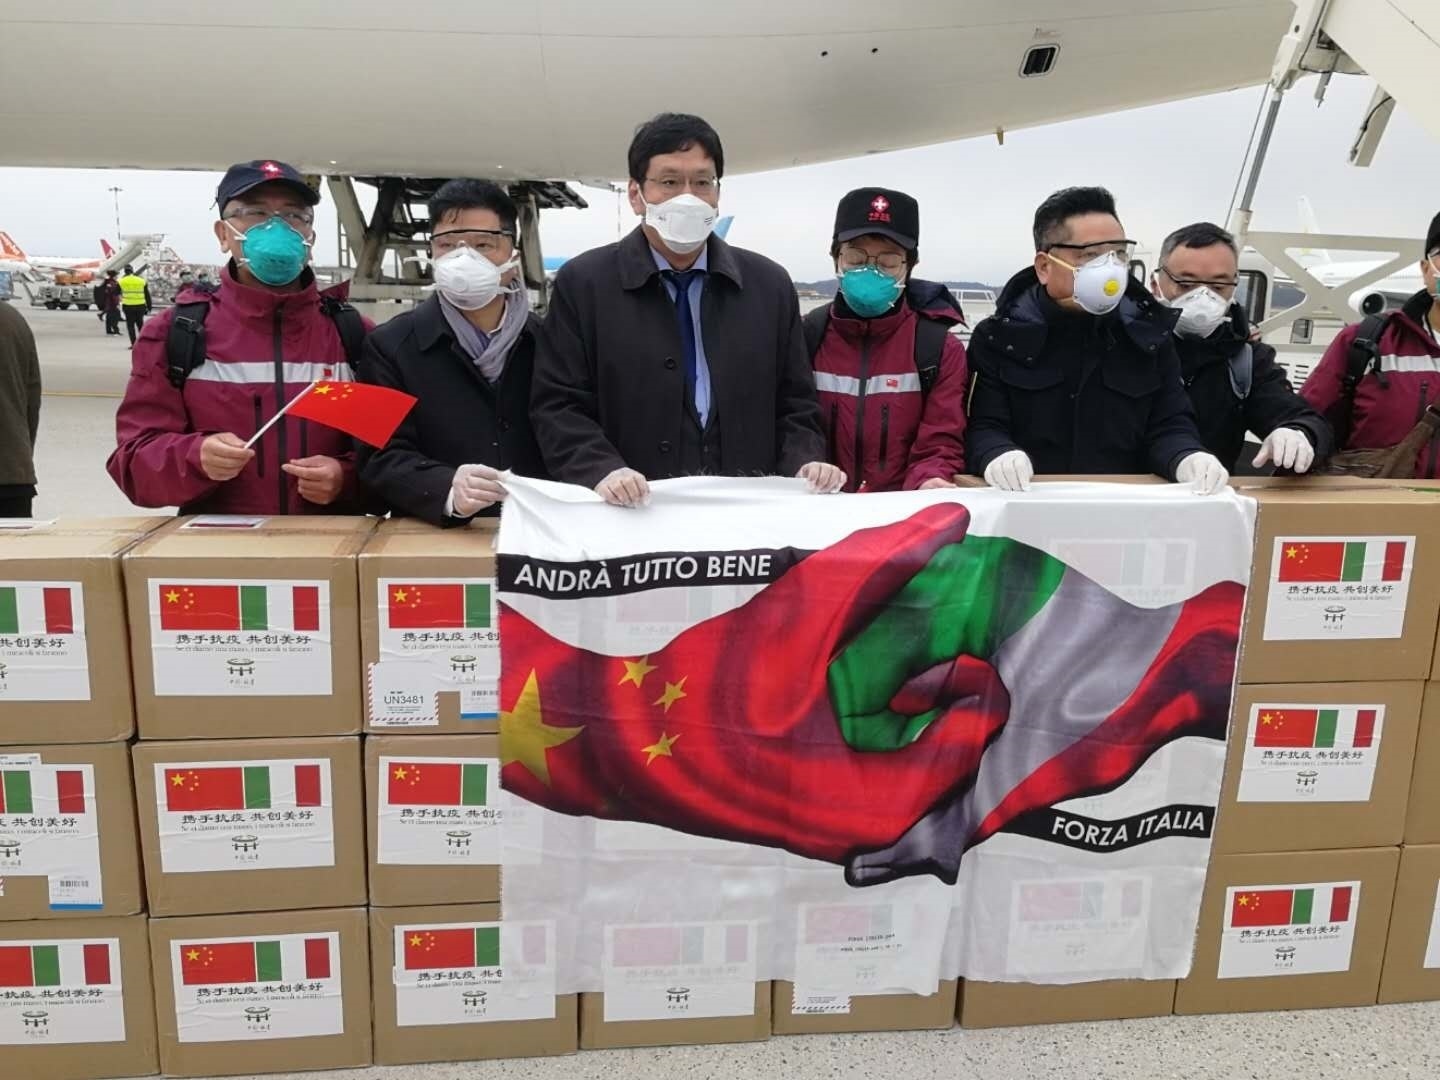 第三批中国抗疫医疗专家组抵达米兰